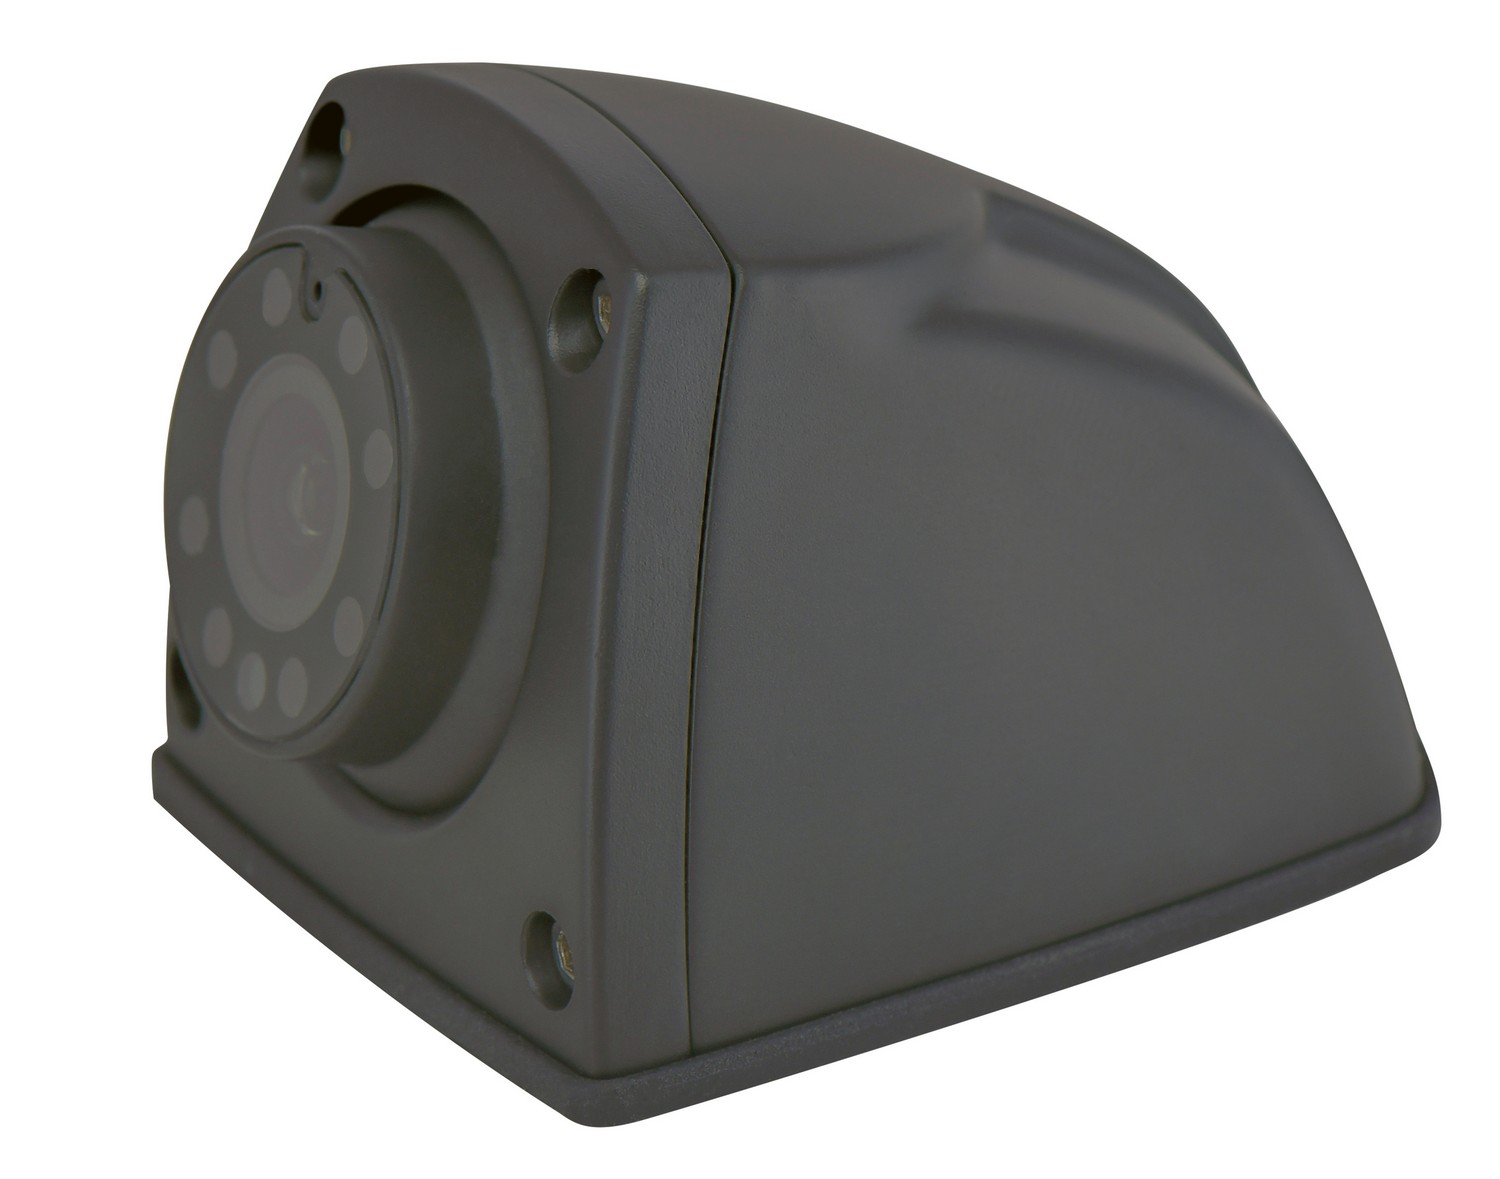 cámara de coche compacta full hd con visión nocturna por infrarrojos